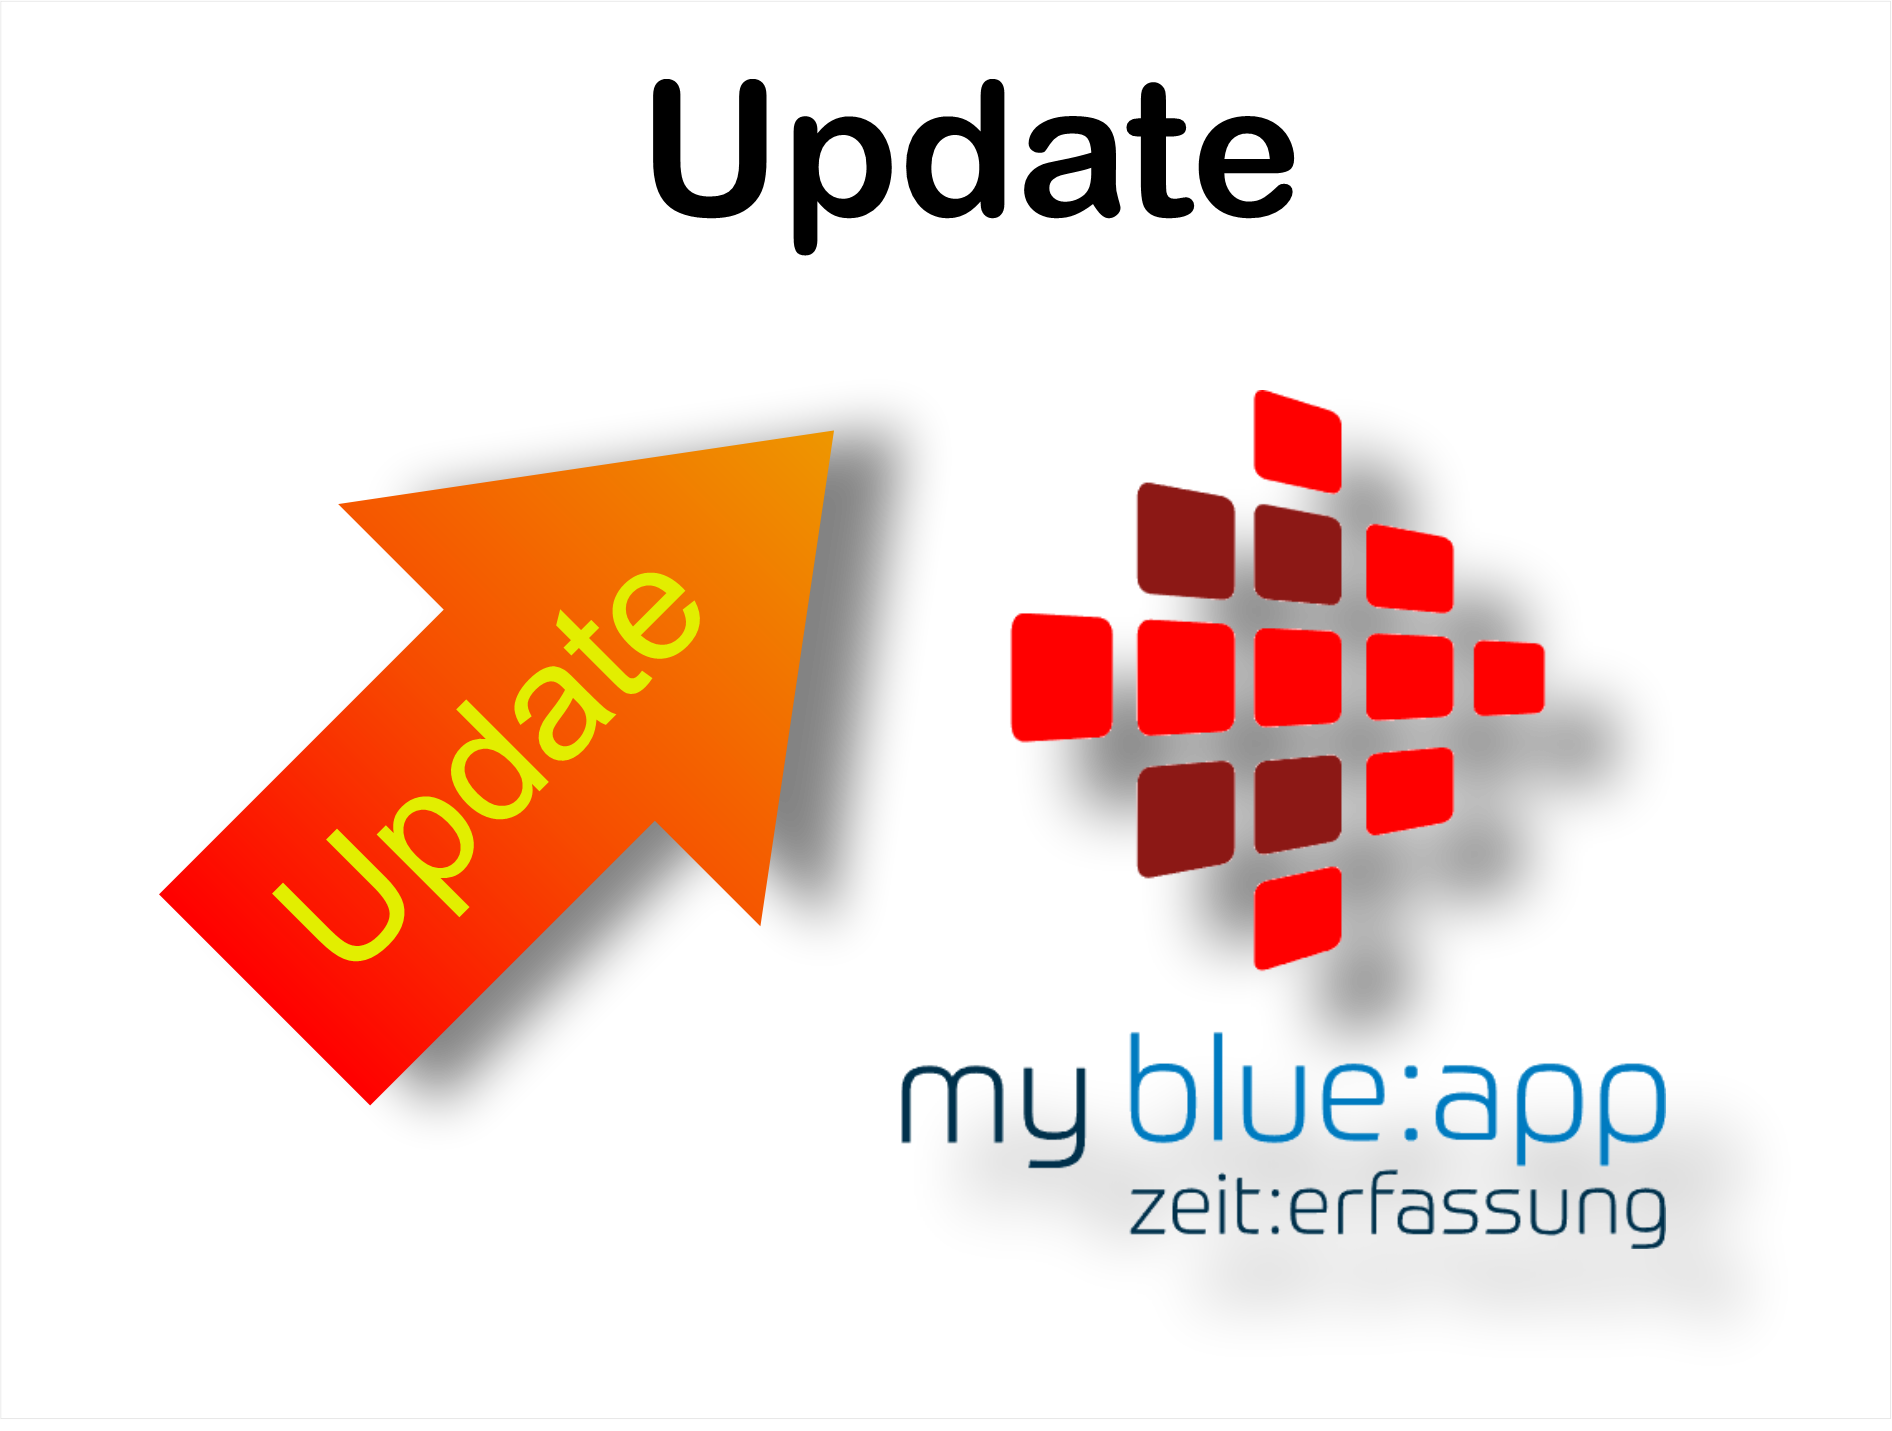  my blue:app zeit:erfassung Update v1.1.7